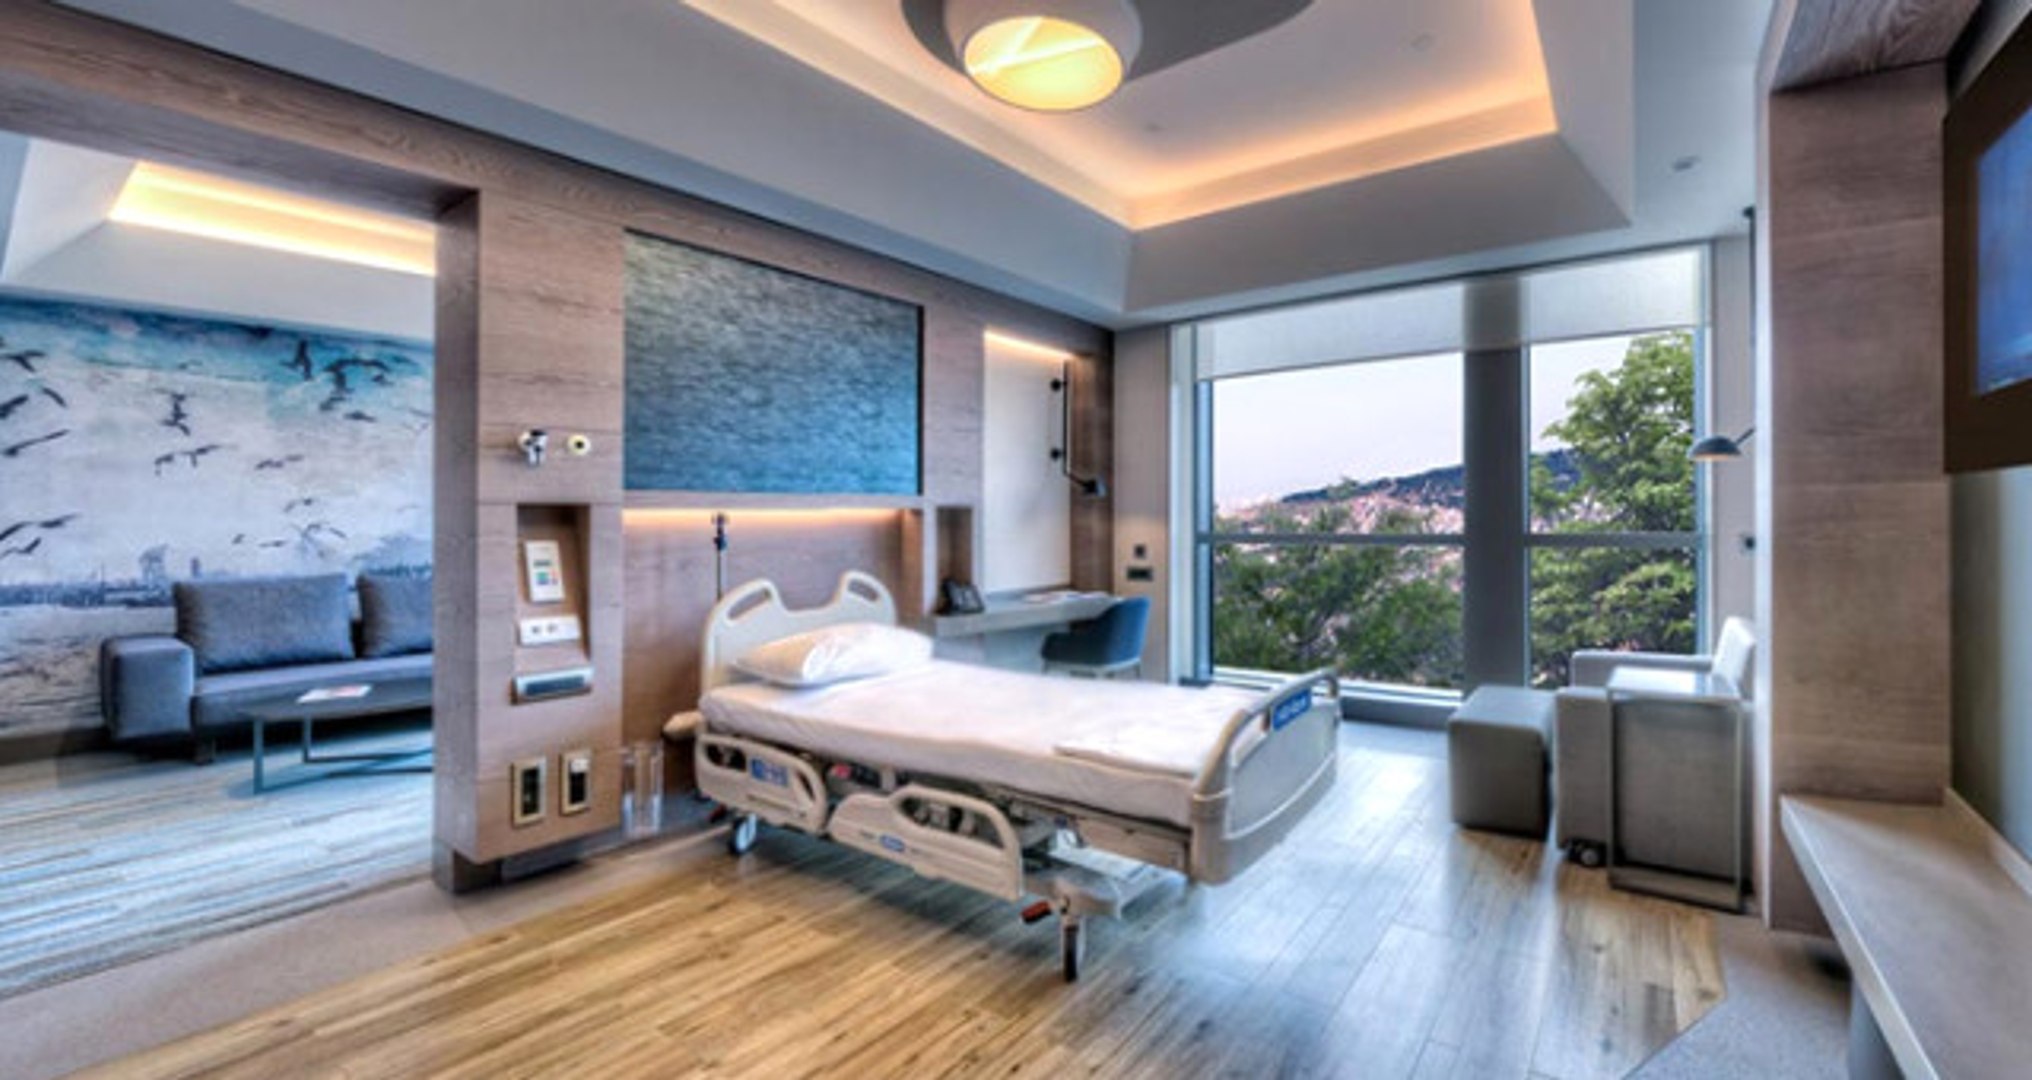 5 Yıldızlı Otel Değil Hastane! Acıbadem Hastanesinde Kral Suiti Bile Var -  Dailymotion Video